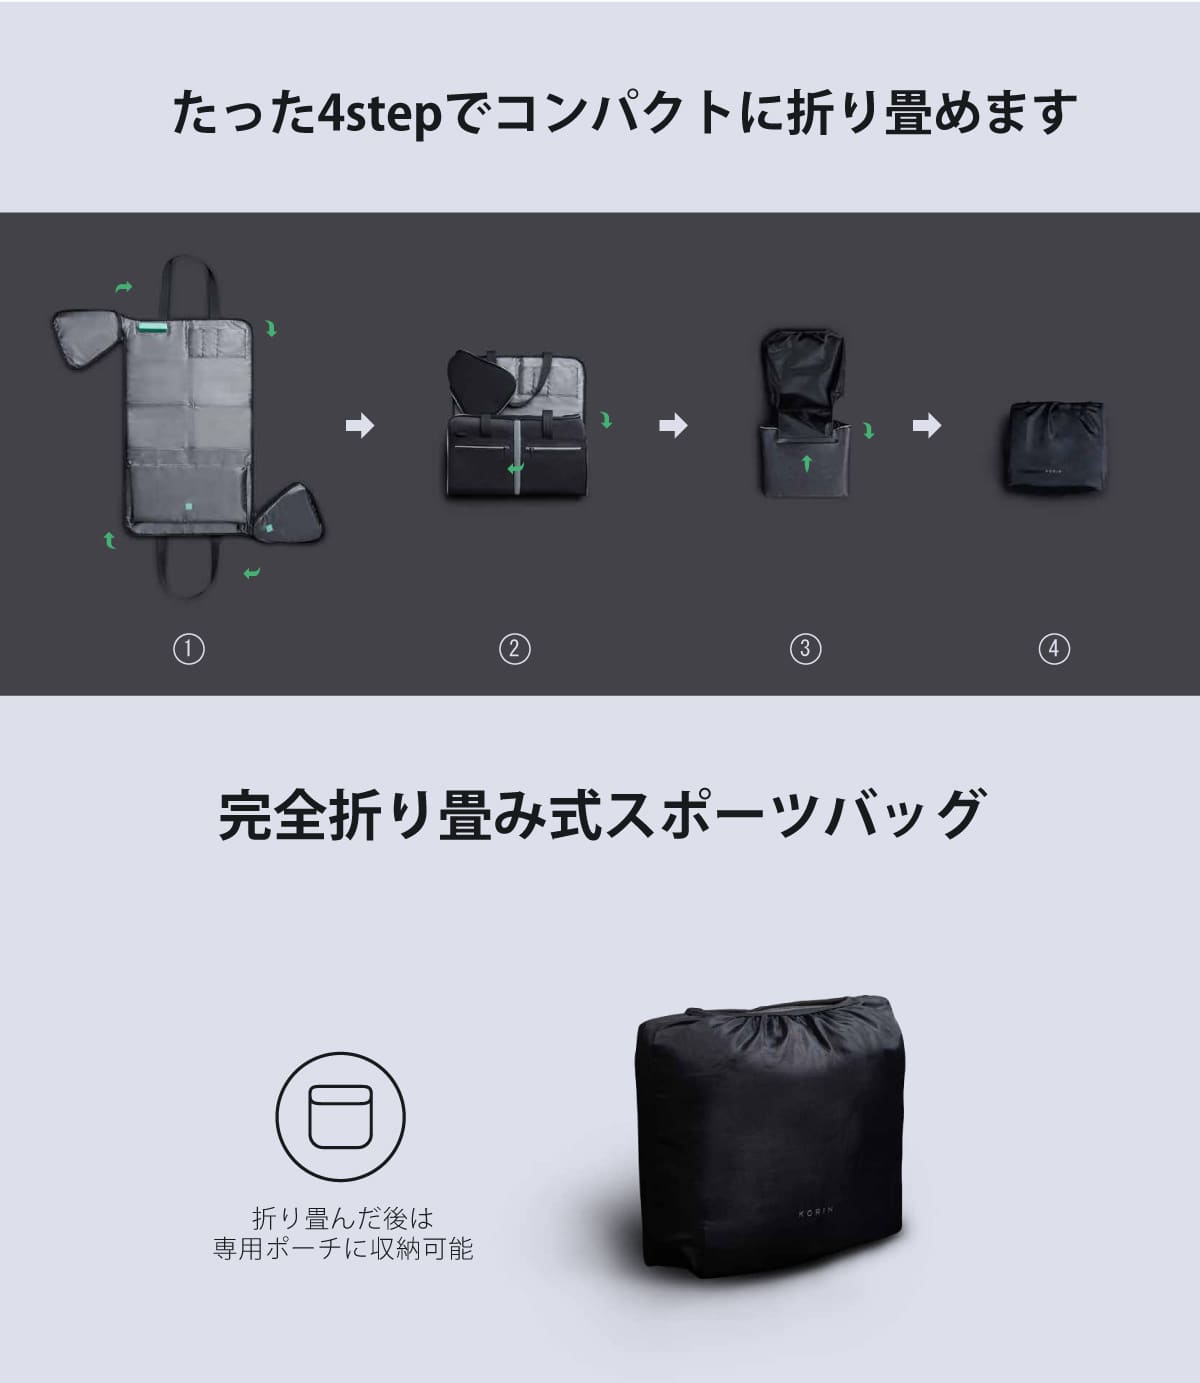 【送料無料】Korin Design FlexPack GYM（コリンデザイン  フレックスパック ジム）ジムバッグ ダッフルバッグ